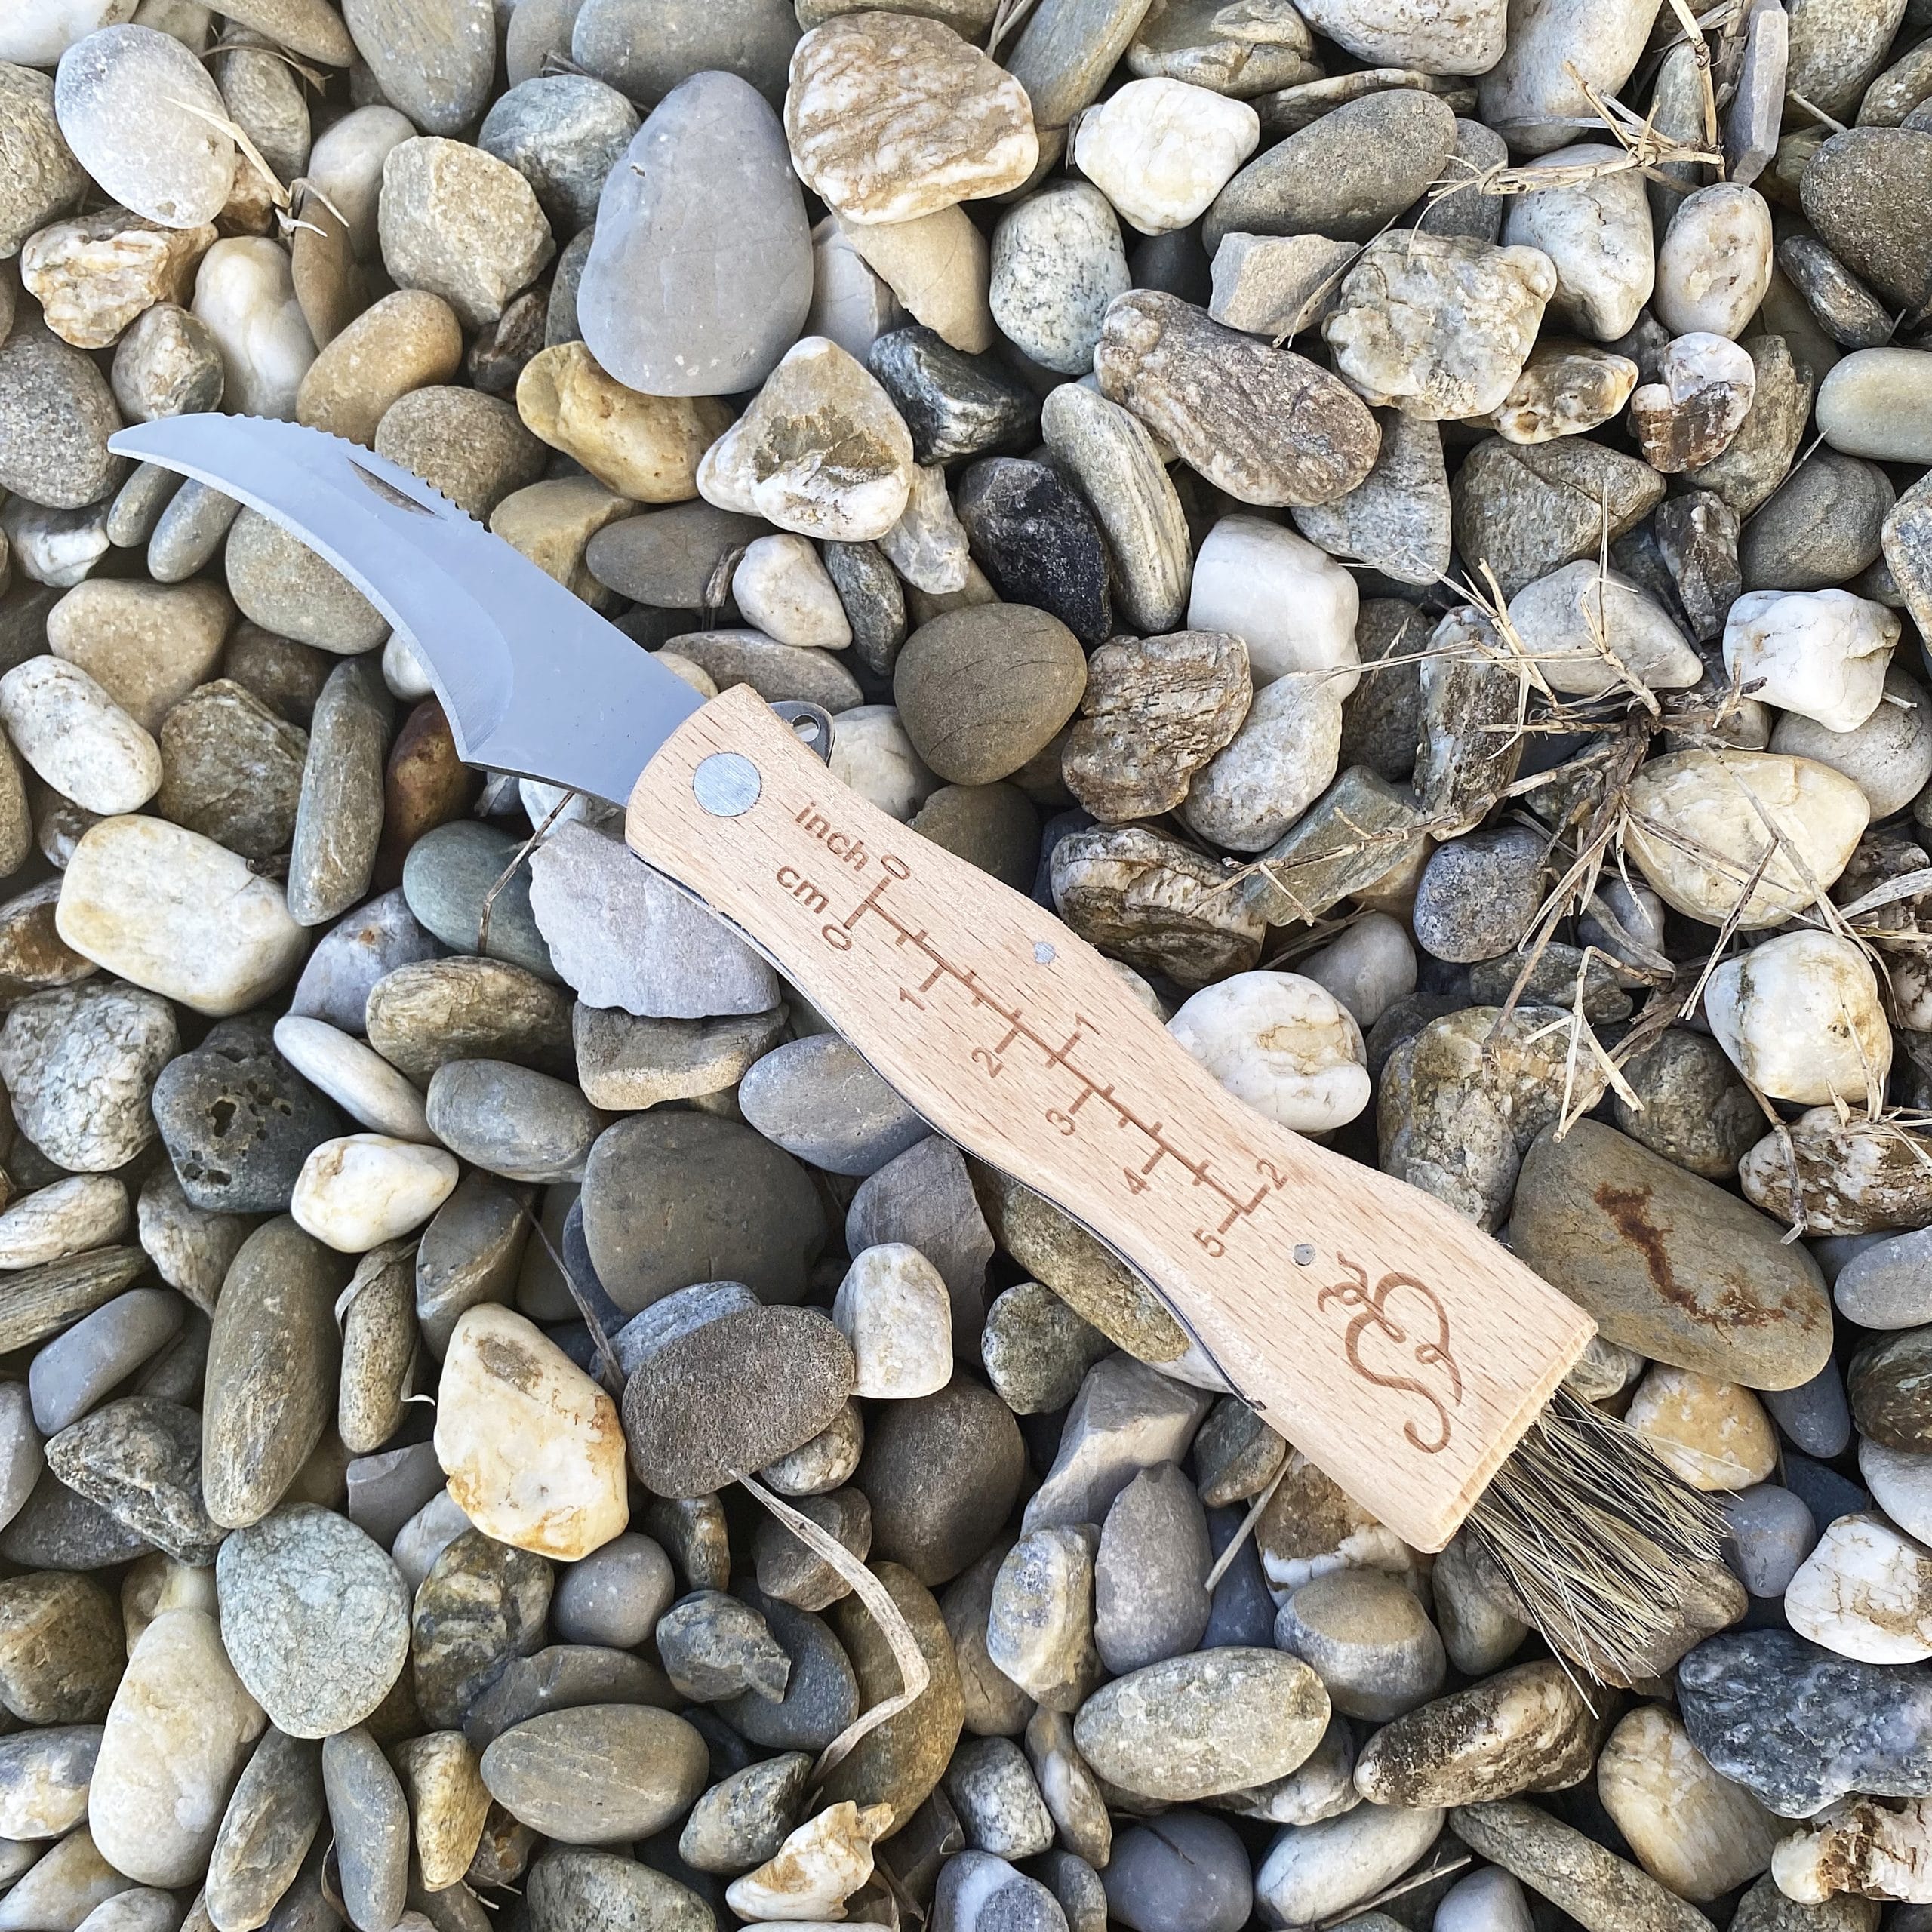 Couteau incurvé à champignons avec manche en bois naturel à brosse non  repliable - La Boutique du Champignon